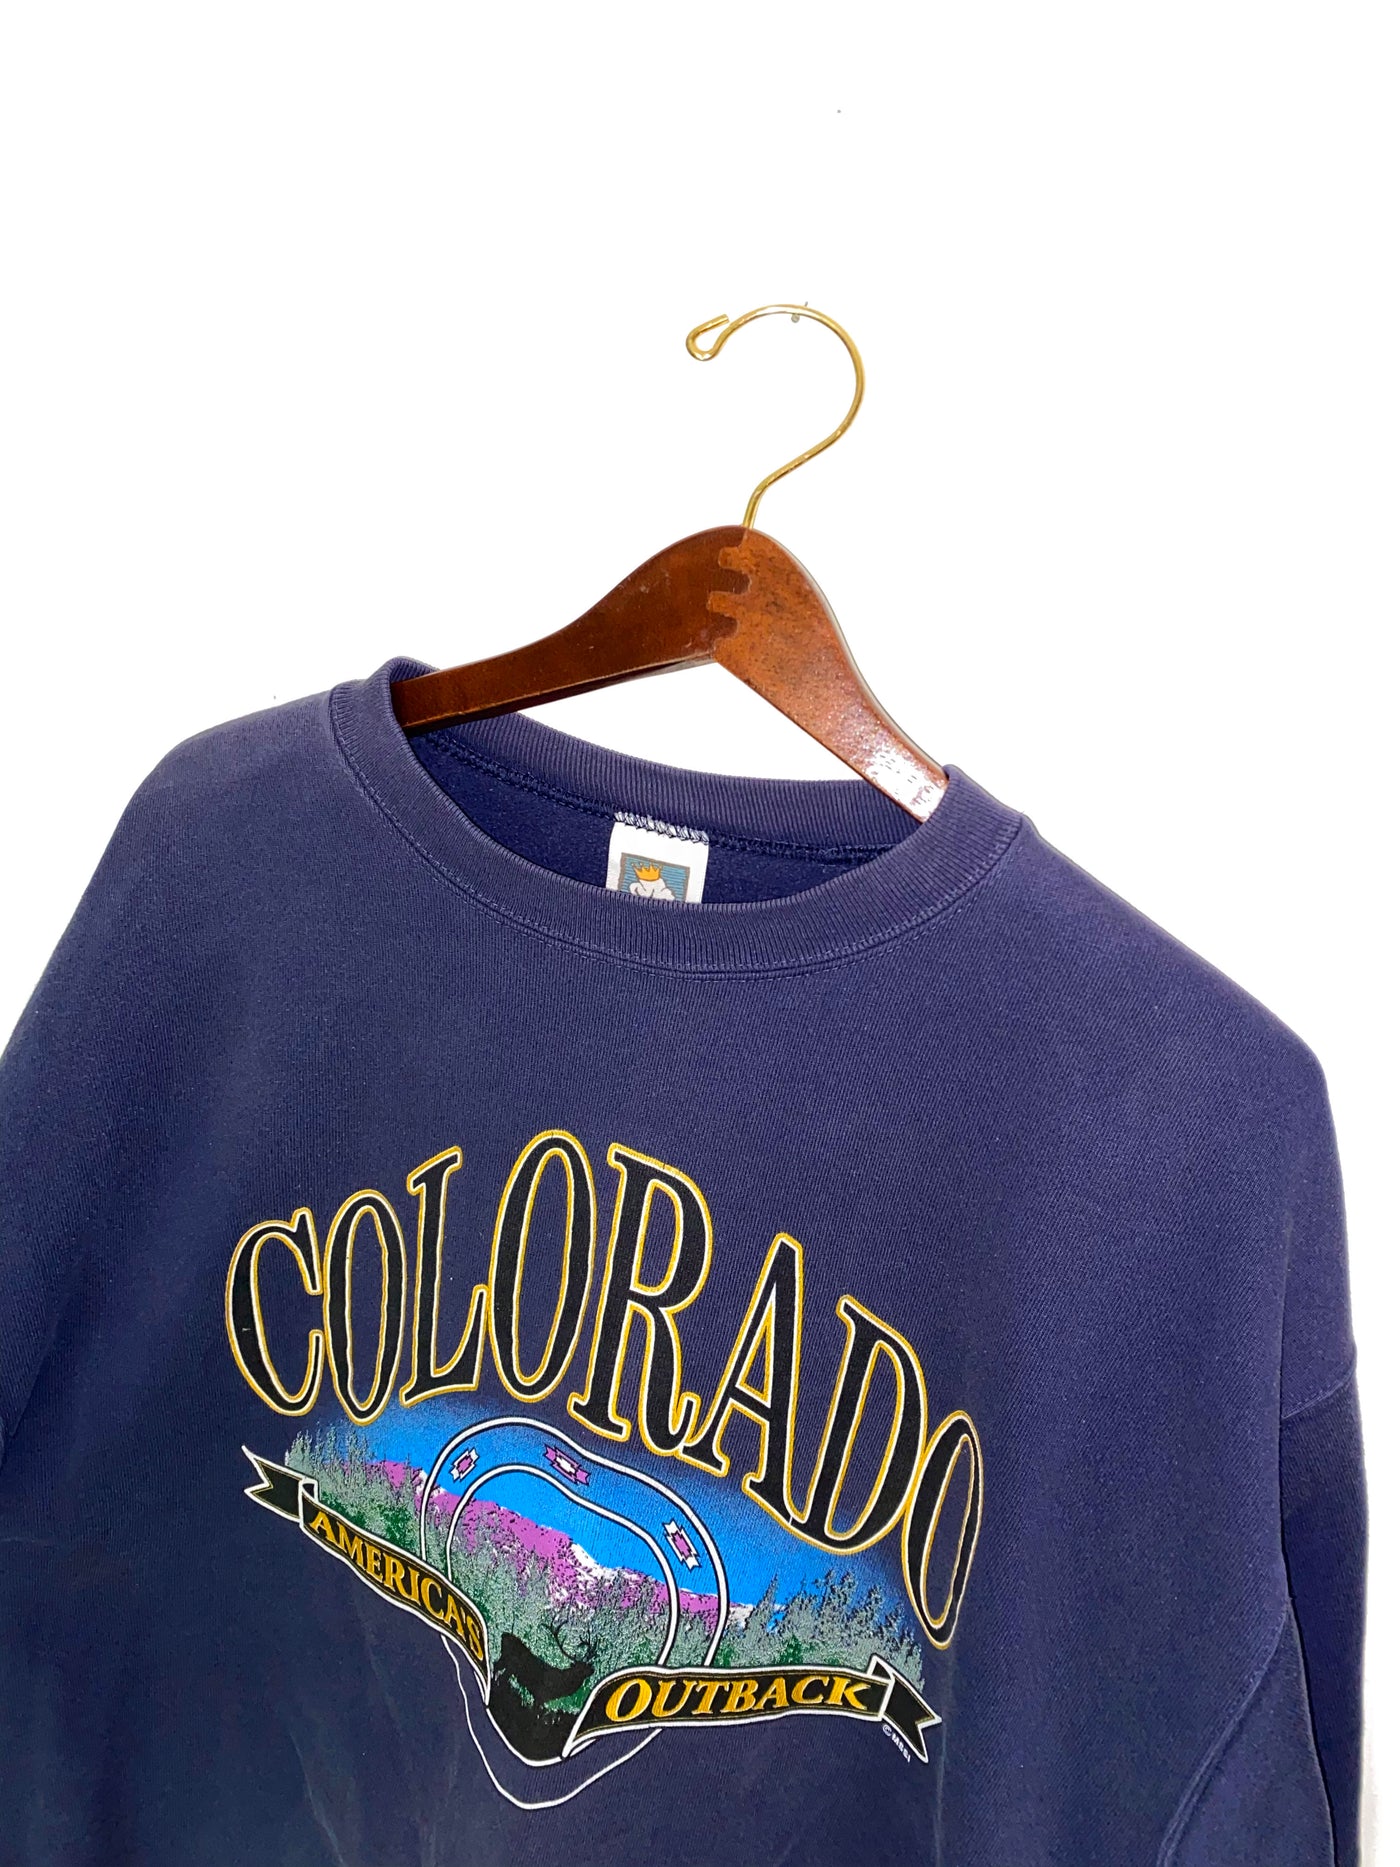 Vintage 90s Colorado “America’s Outback” Crewneck